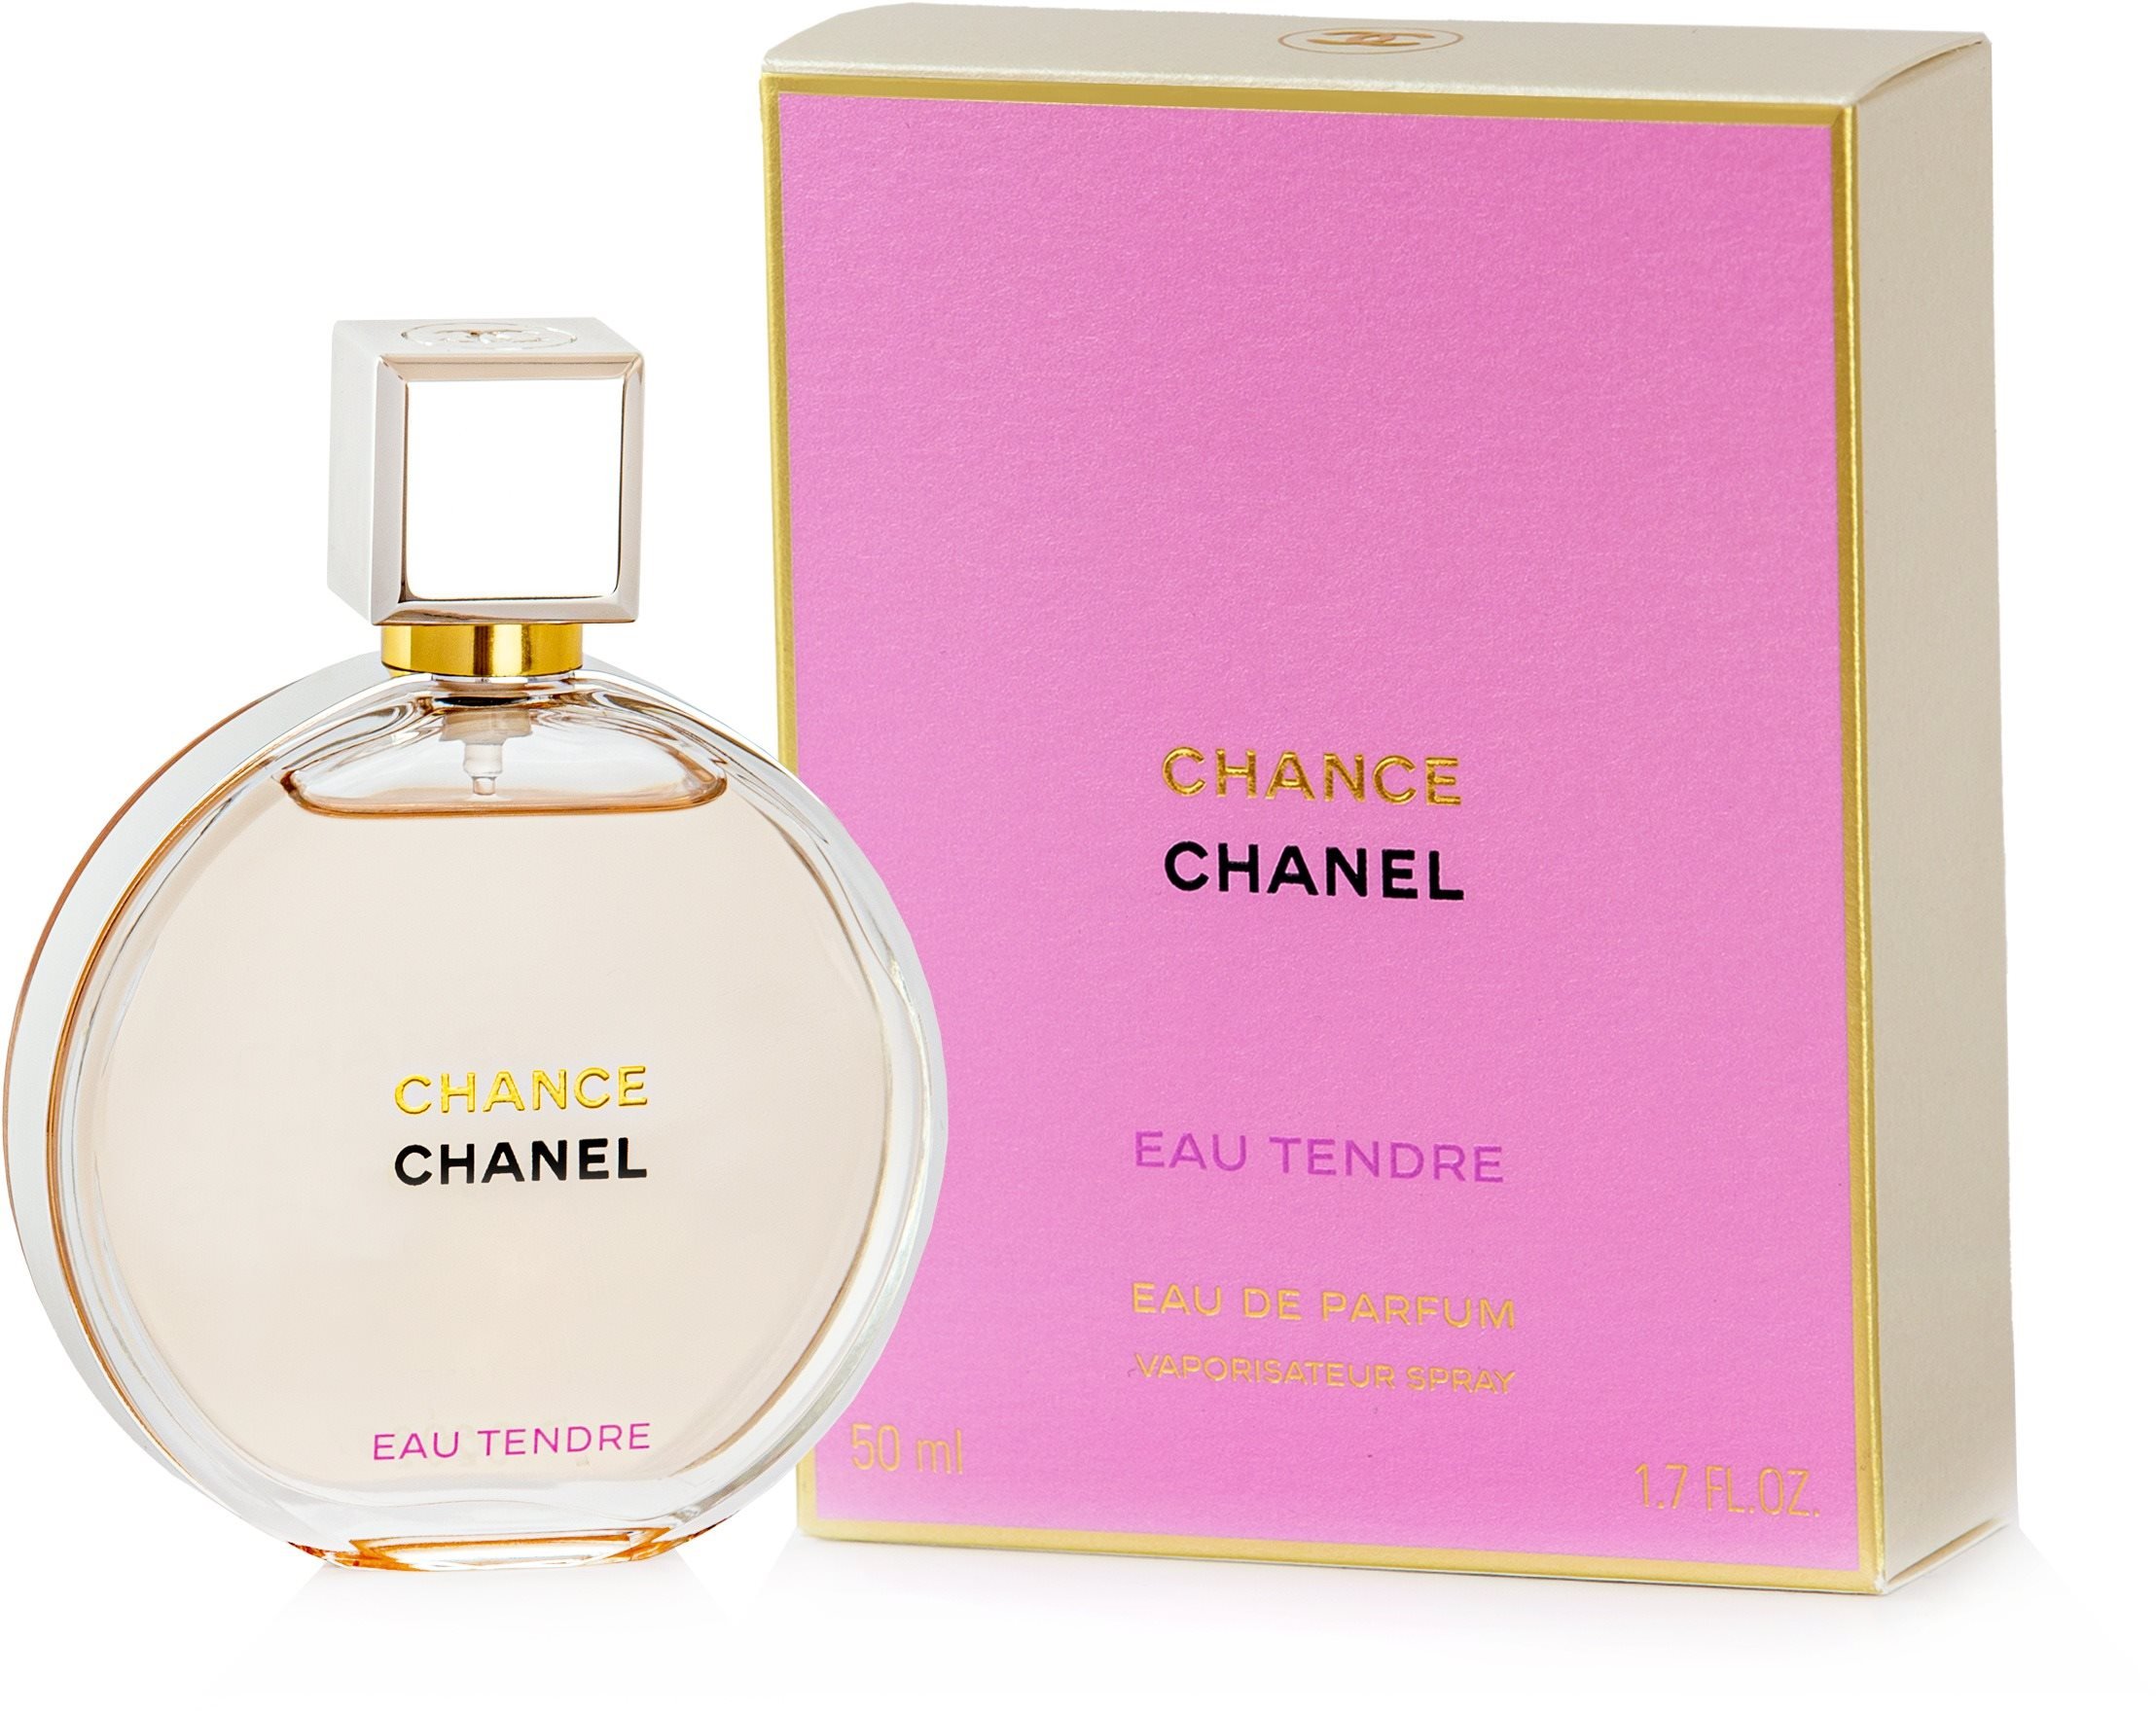 CHANEL Chance Eau Tendre EdP 50 ml from 116.90 € - Eau de Parfum